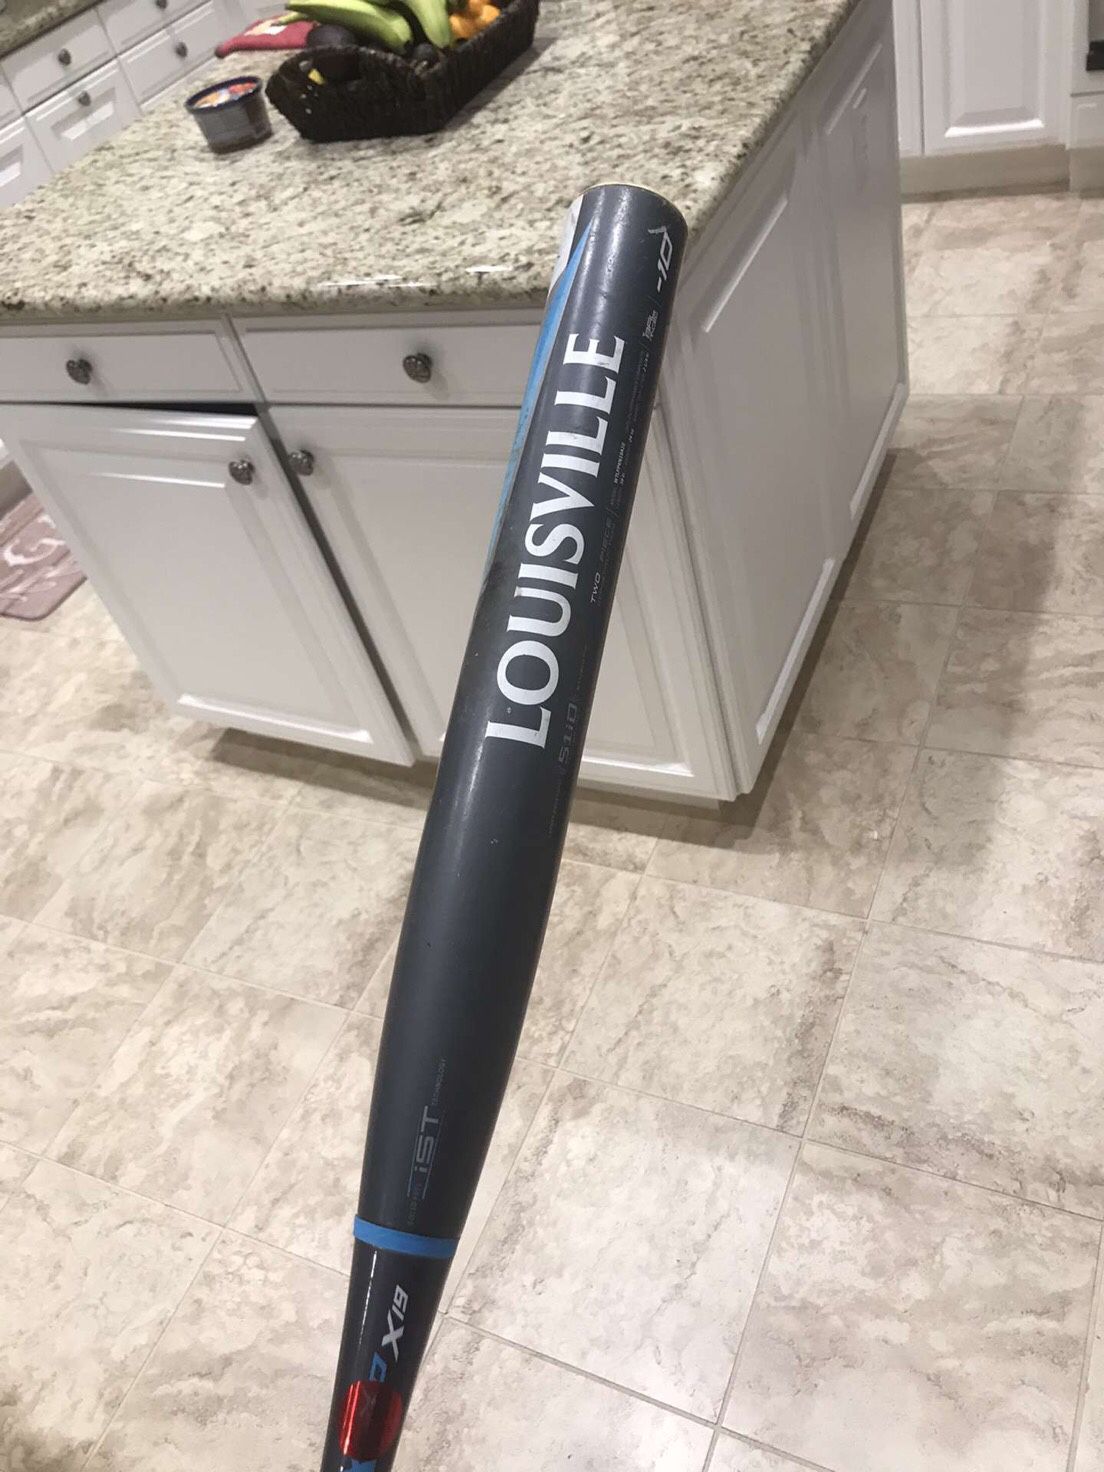 2019 Louisville slugger xeno 34 in/24 oz. 12 inch Wilson A200 baseball/softball first base glove.